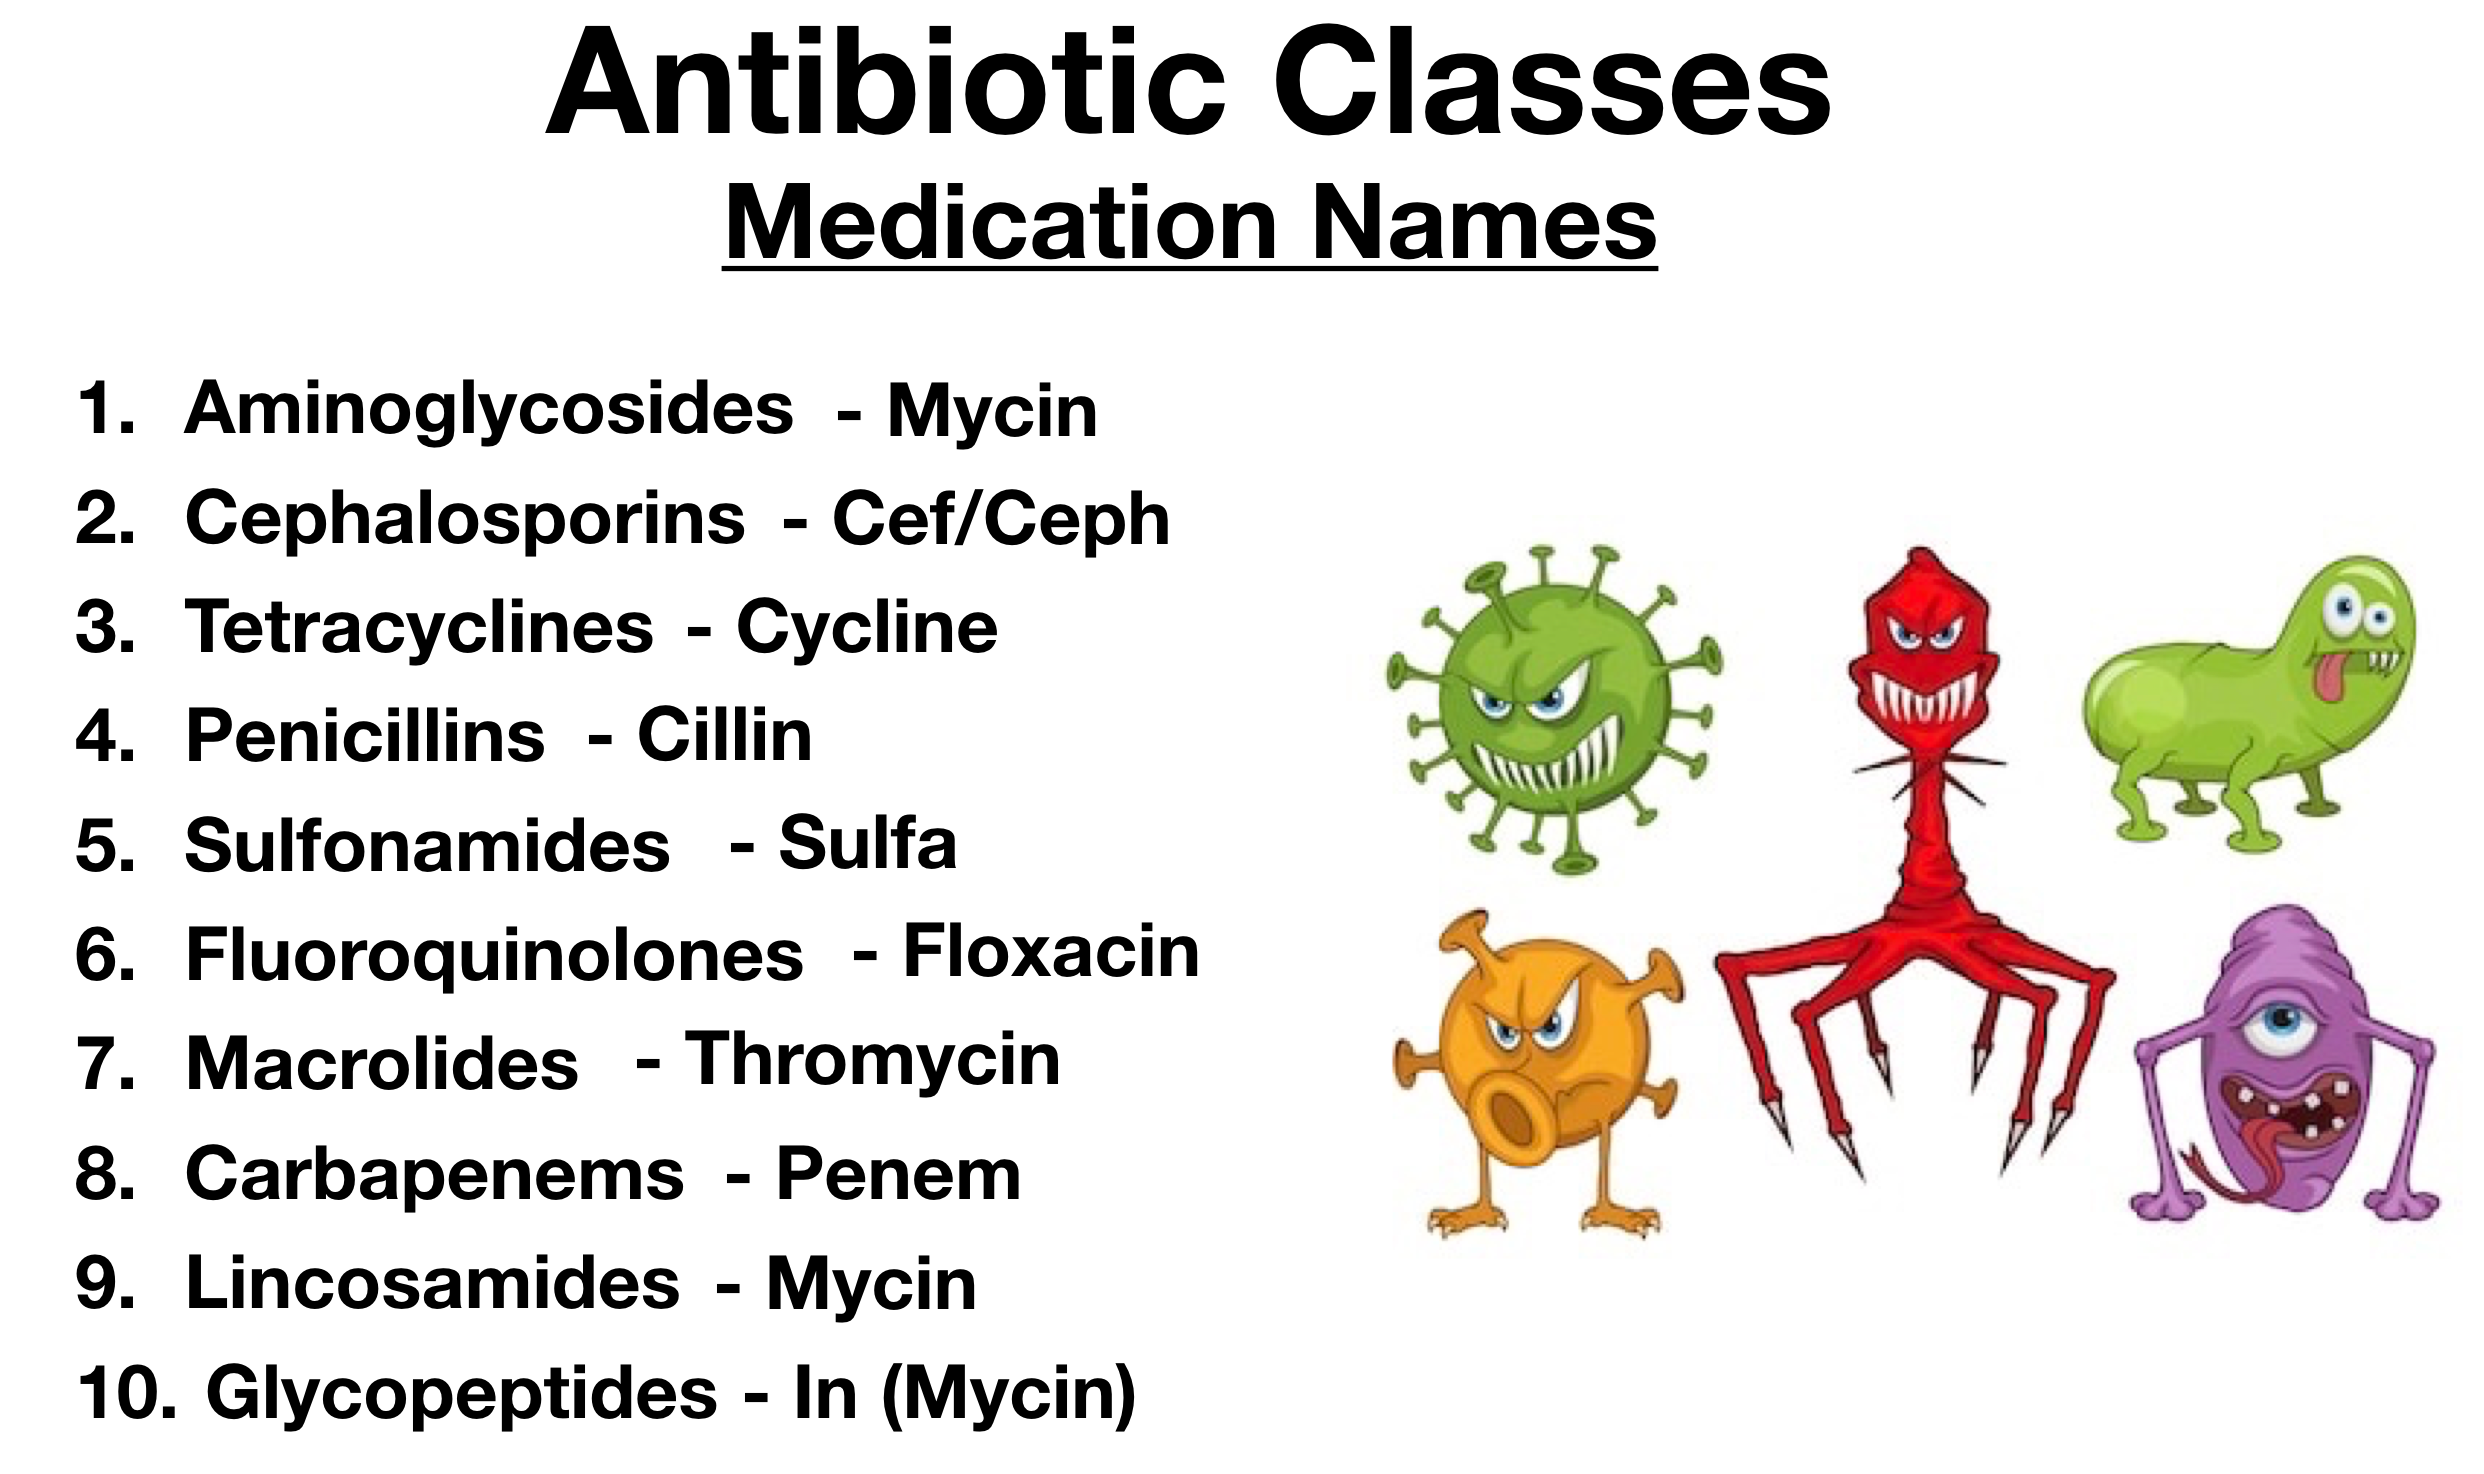 Are Antibiotics Drugs?